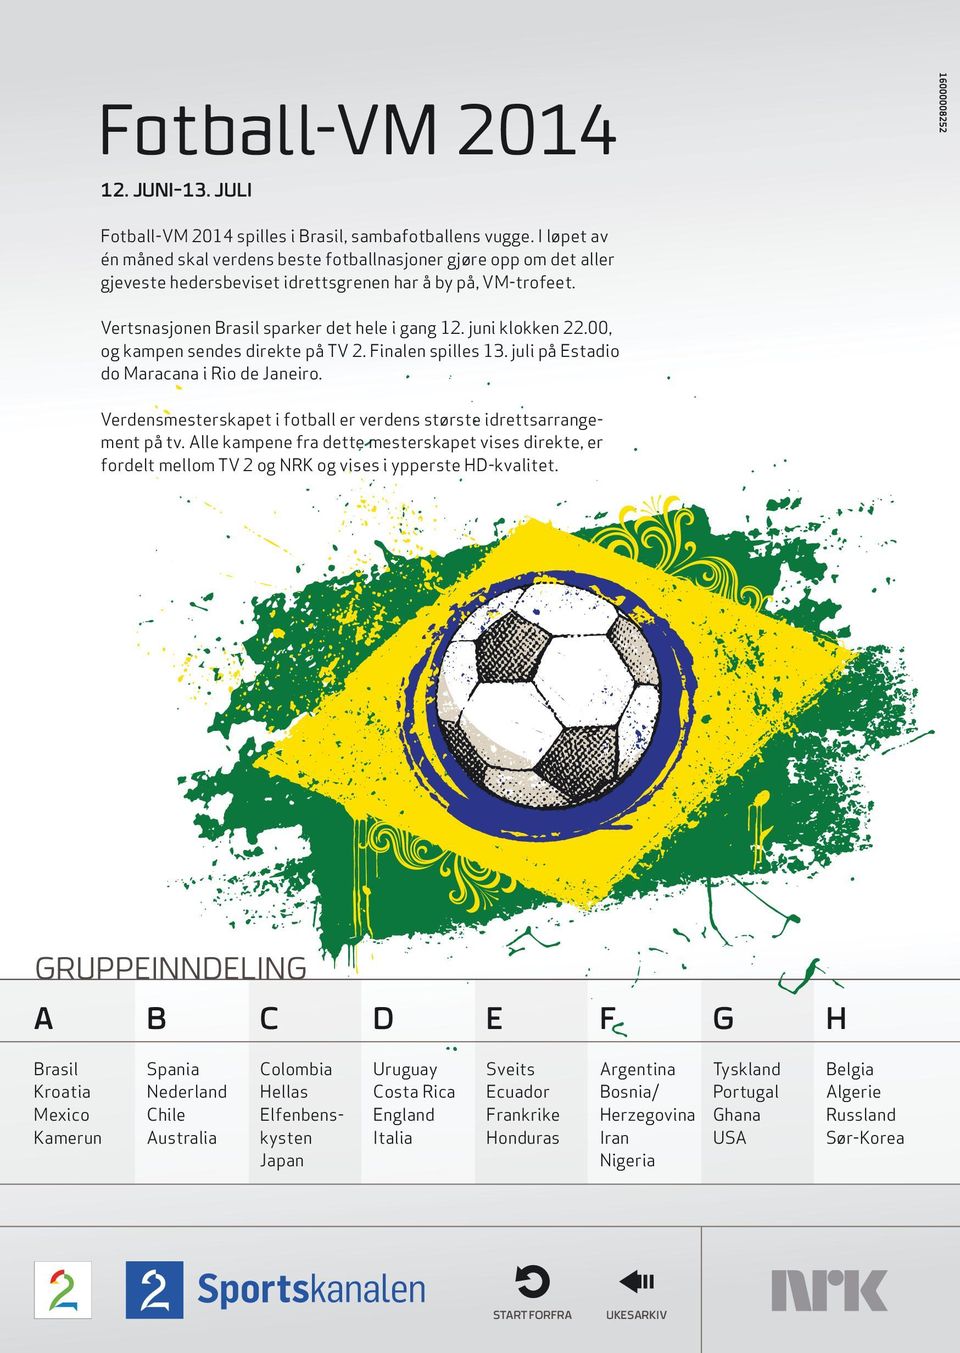 juni klokken 22.00, og kampen sendes direkte på TV 2. Finalen spilles 13. juli på Estadio do Maracana i Rio de Janeiro. Verdensmesterskapet i fotball er verdens største idrettsarrangement på tv.